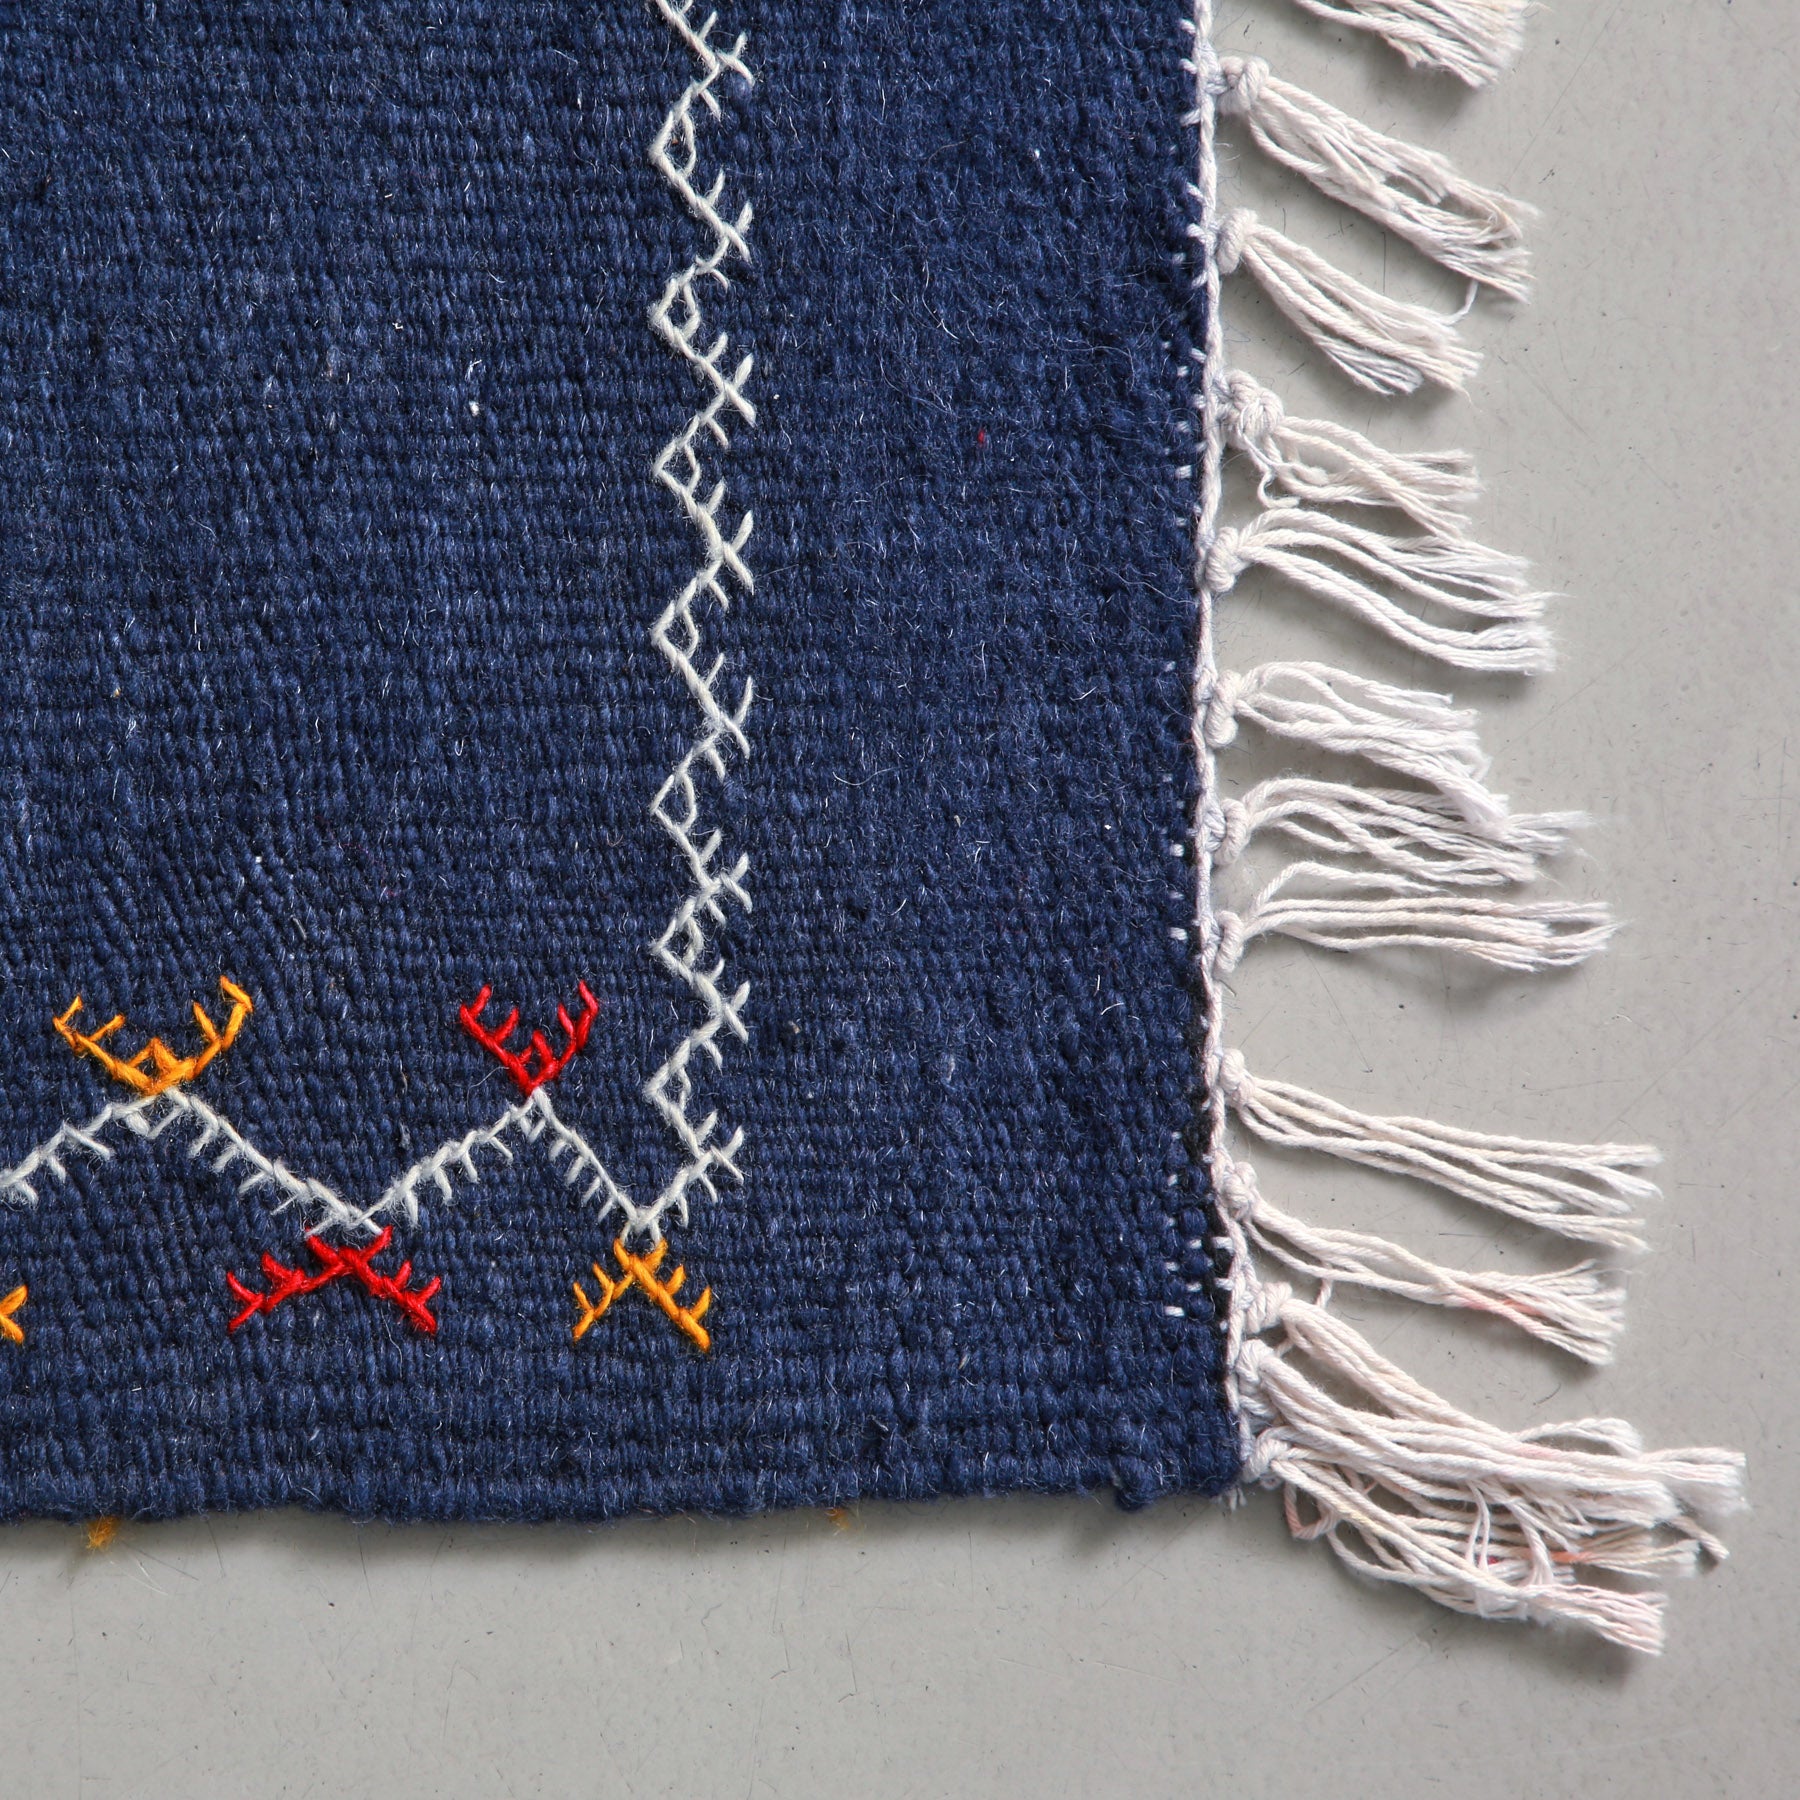 dettaglio dell'angolo con una cornice ricamata e delle frangia sottile di un tappeto artigianale marocchino a tessitura piatta colore blu